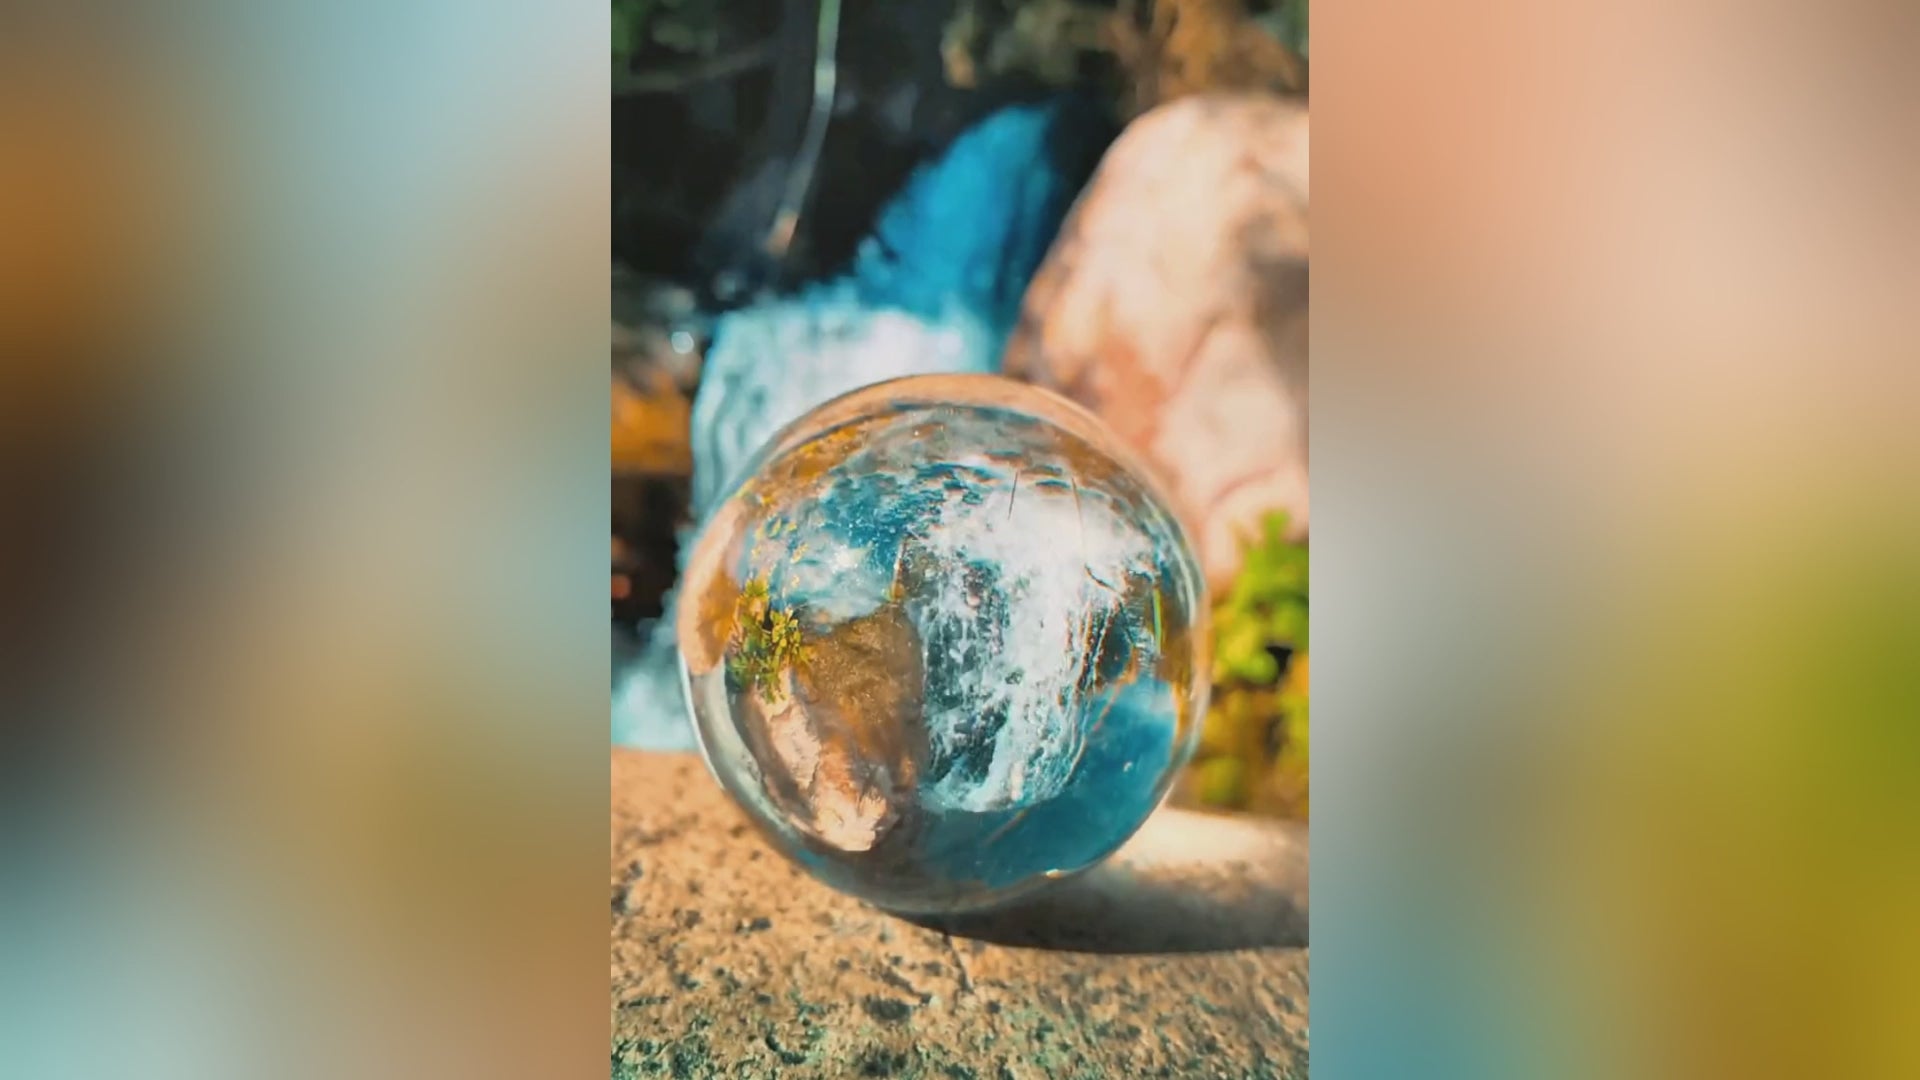 Belle Vous Bola de Cristal K9 80mm - Bola Cristal Fotografia 8cm